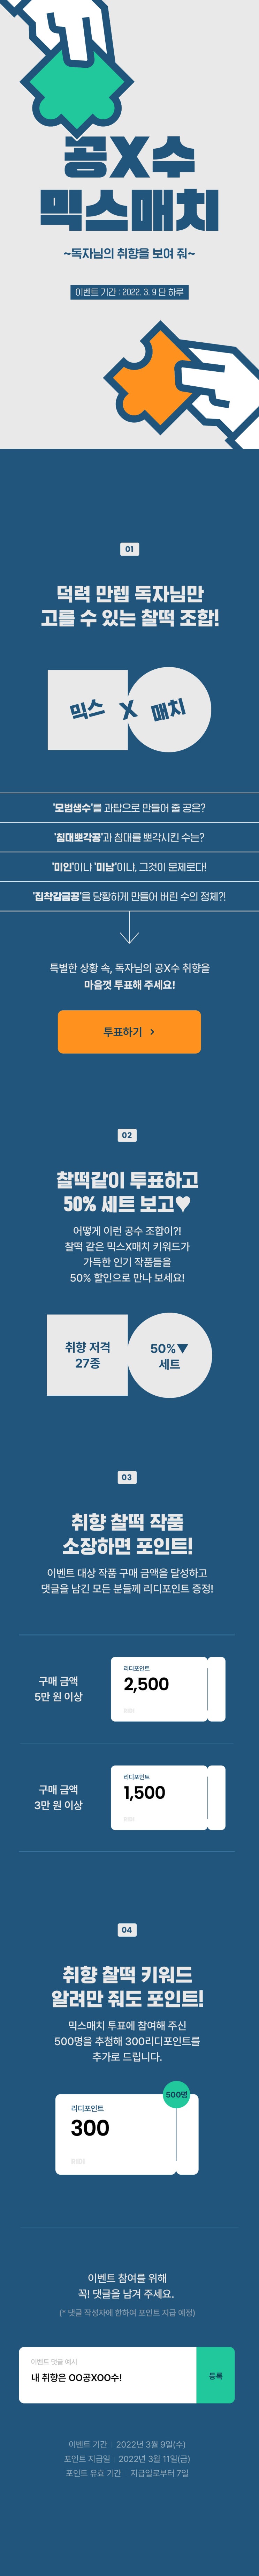 BL소설 추천) 리디북스 22.03월 재정가(공X수 믹스매치! 50%) 추천 및 구매